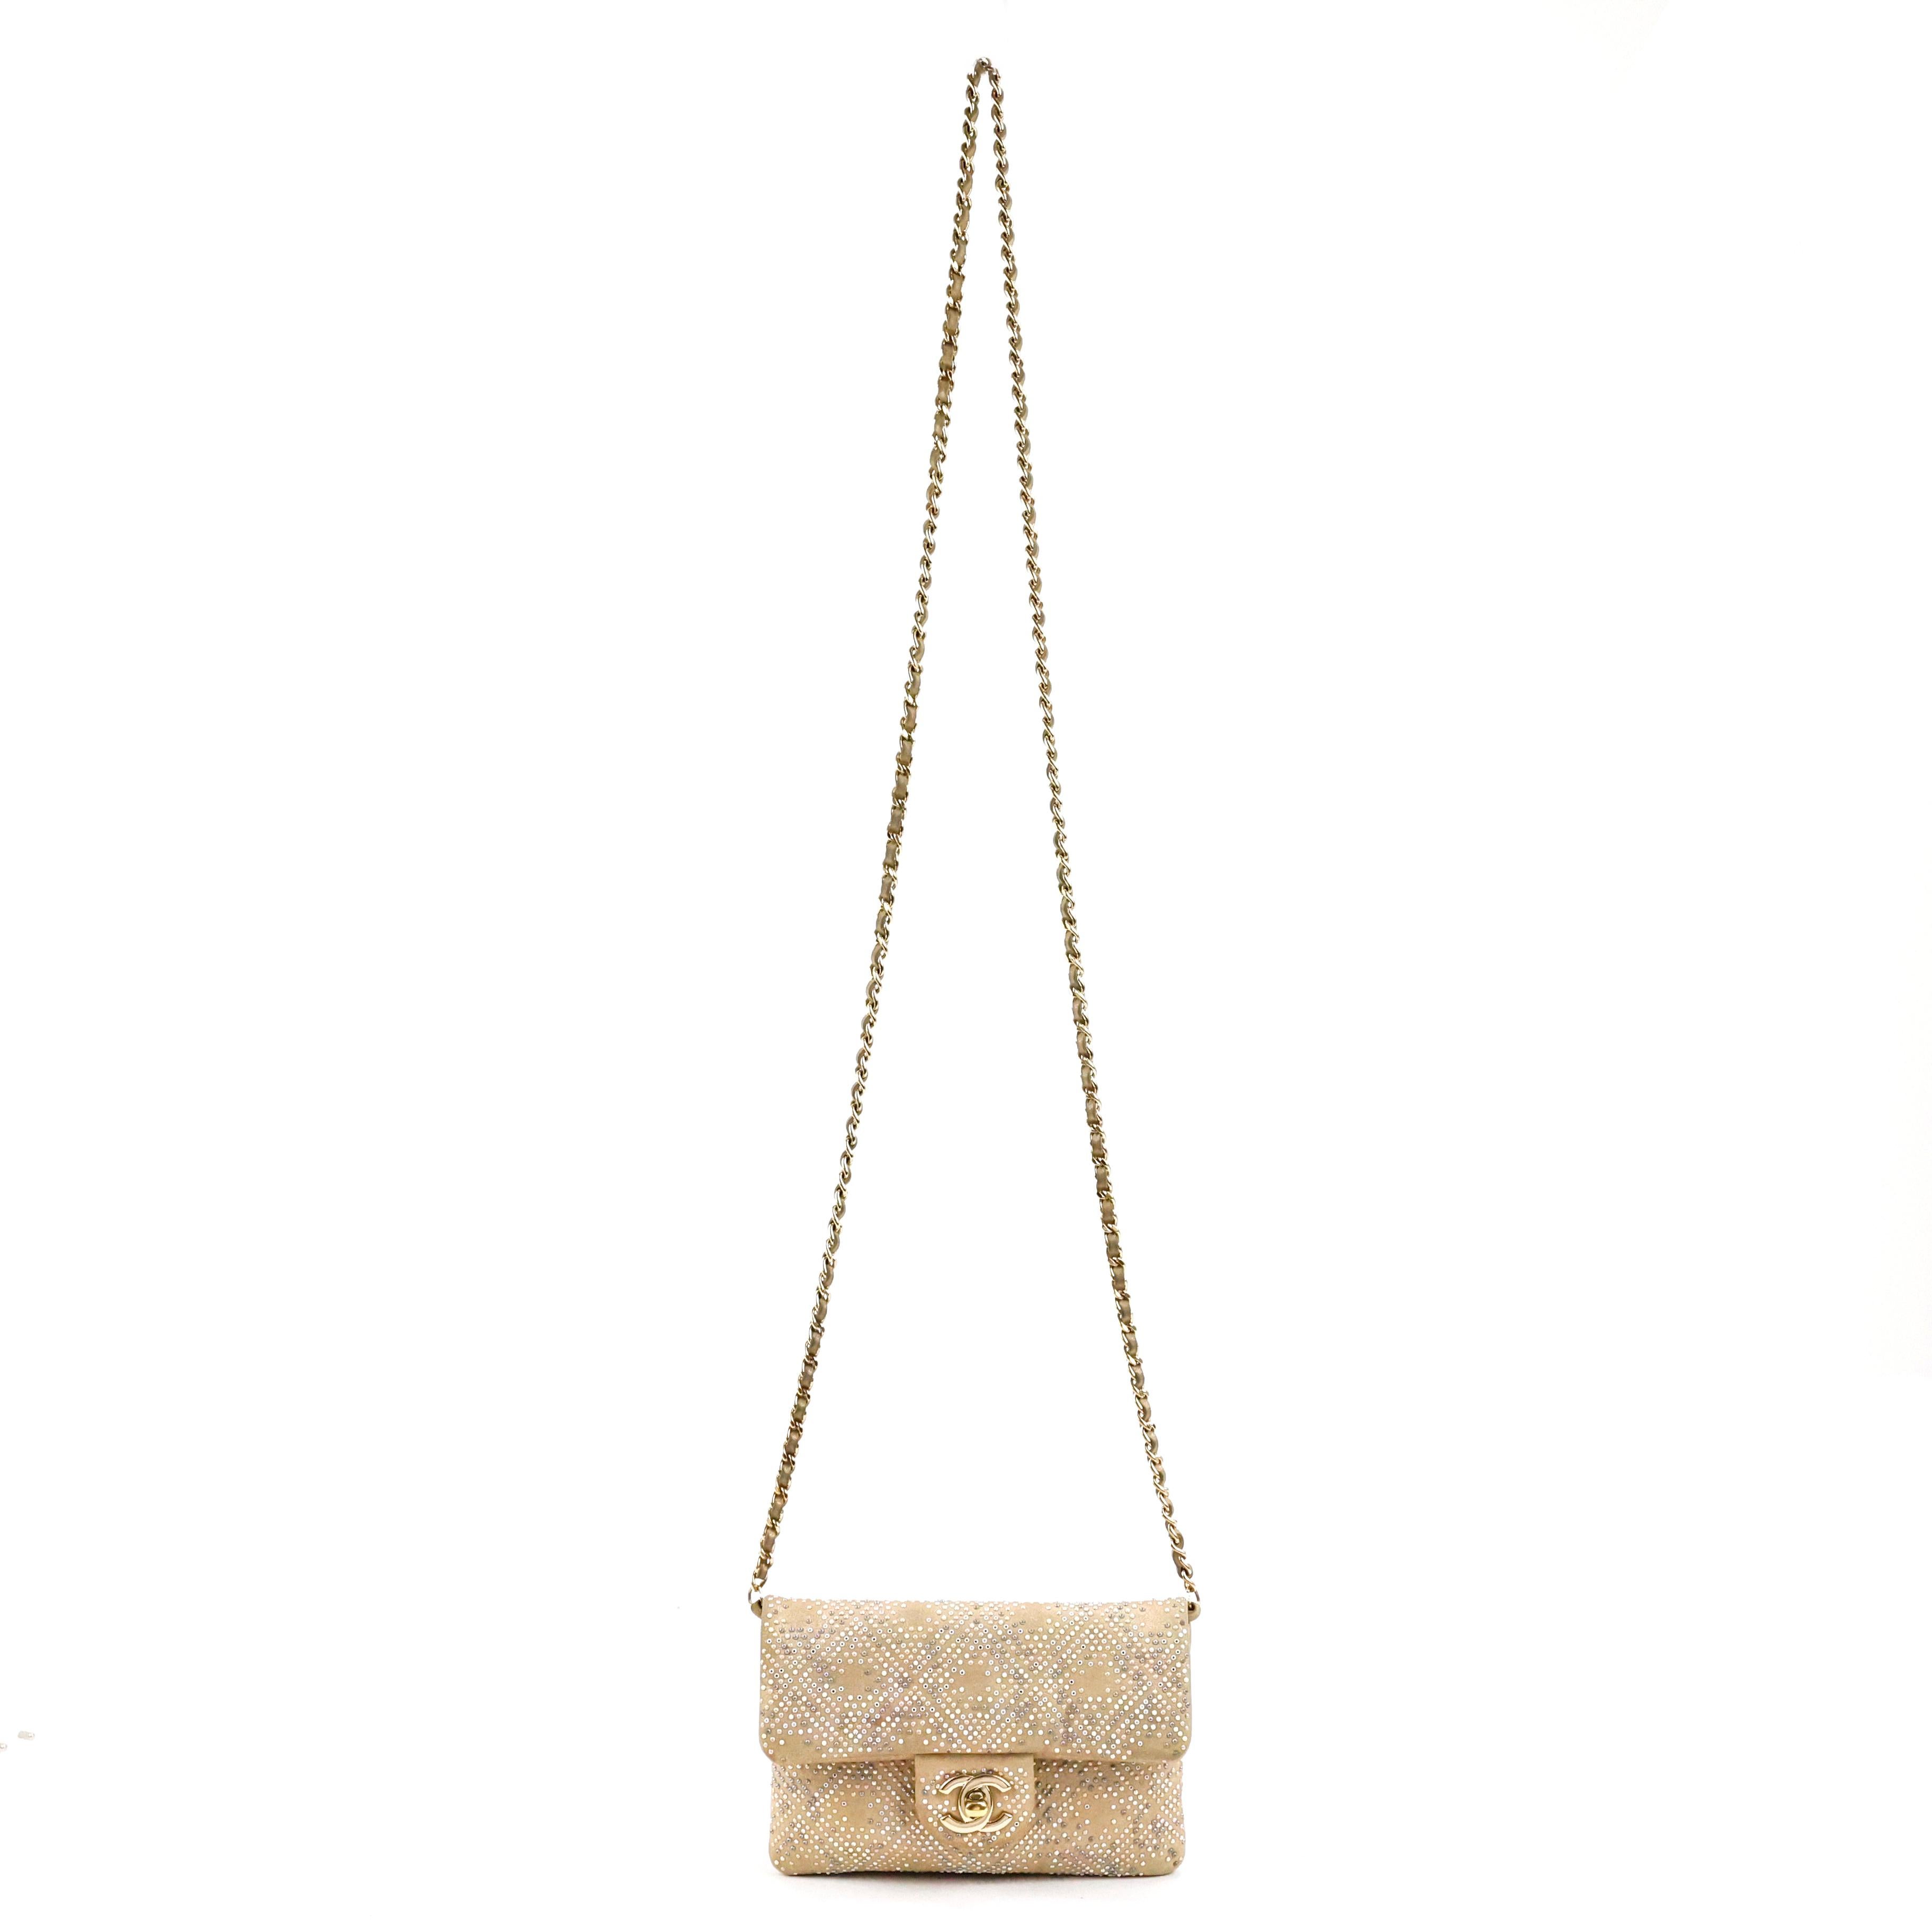 Seltene Chanel verschönert Mini-Klappe Tasche, in Leder Farbe Gold, alle über Perlen mit Mikro-Perlen, Steine und Spiegel, Gold Hardware.

Bedingung:
Gutes, gebrauchtes Stück mit Gebrauchsspuren auf dem